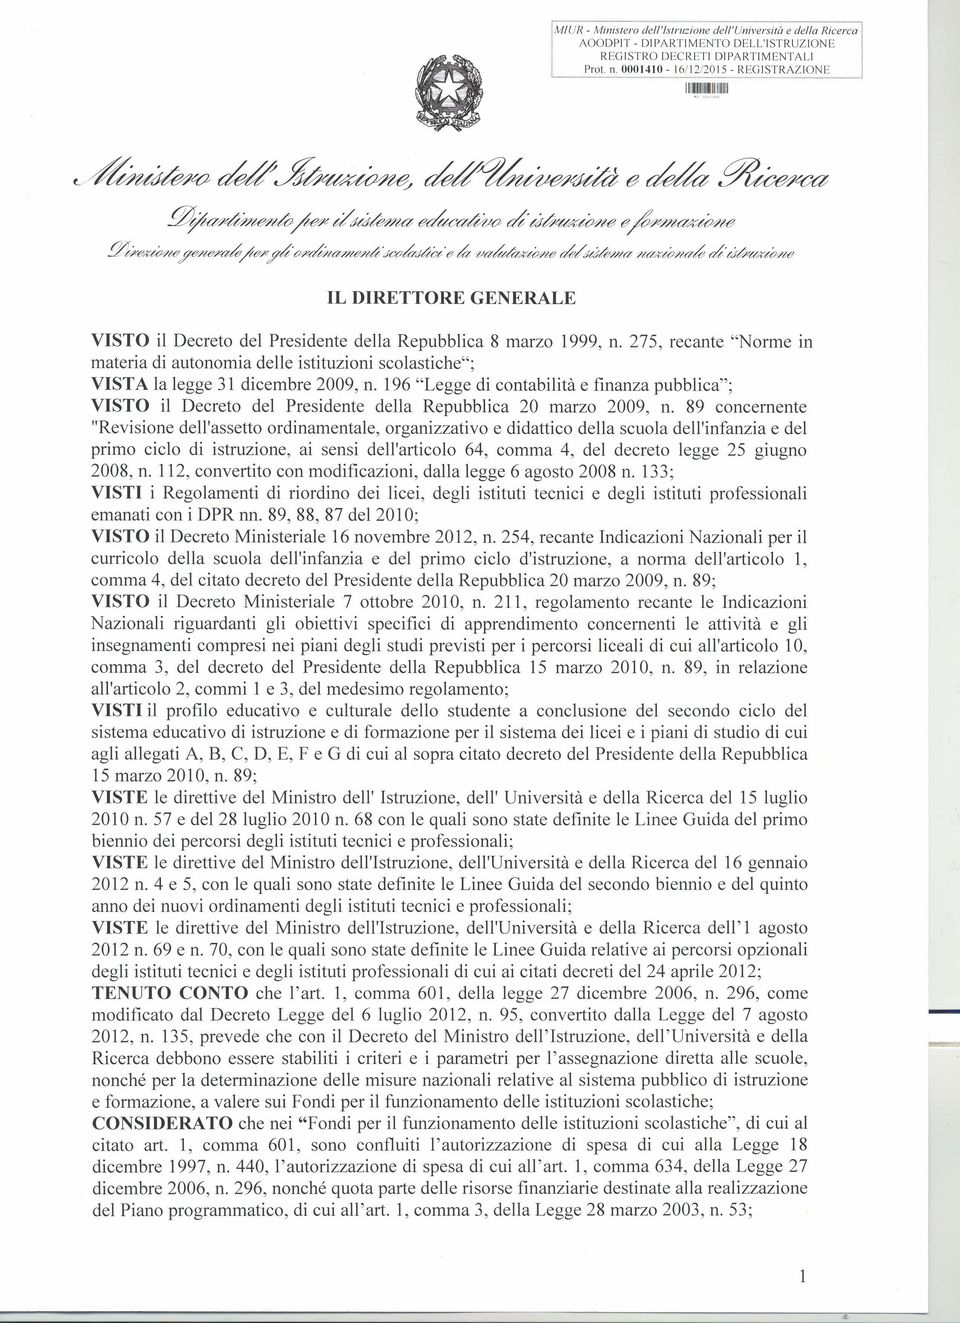 275, recante "Norme in materia di autonomia delle istituzioni scolastiche"; VISTA la legge 31 dicembre 2009, n.